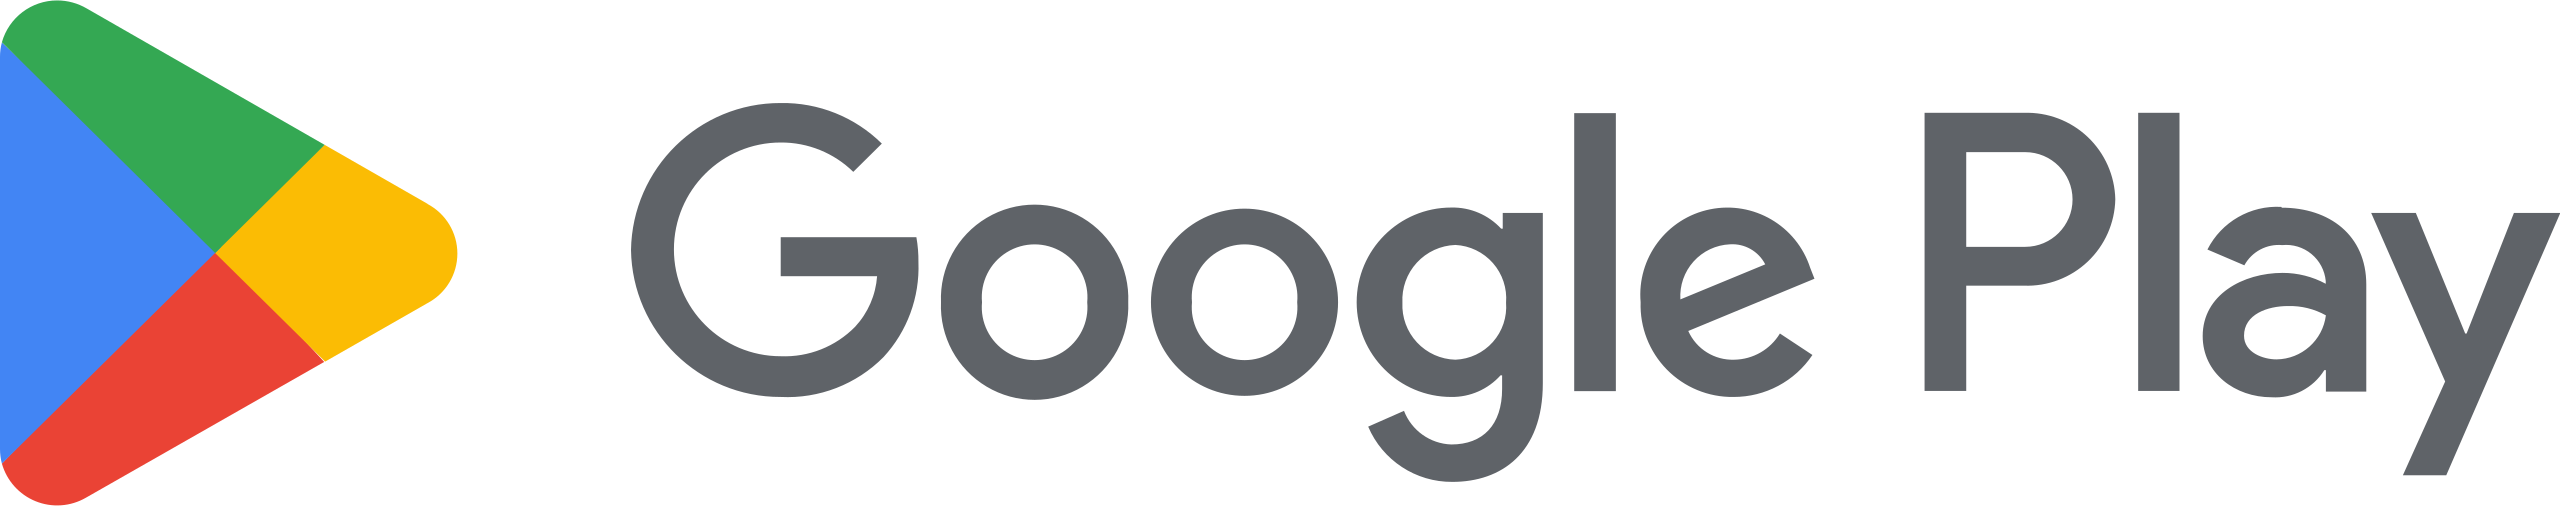 Google Play Logo - Als Rangerin im Politik-Dschungel